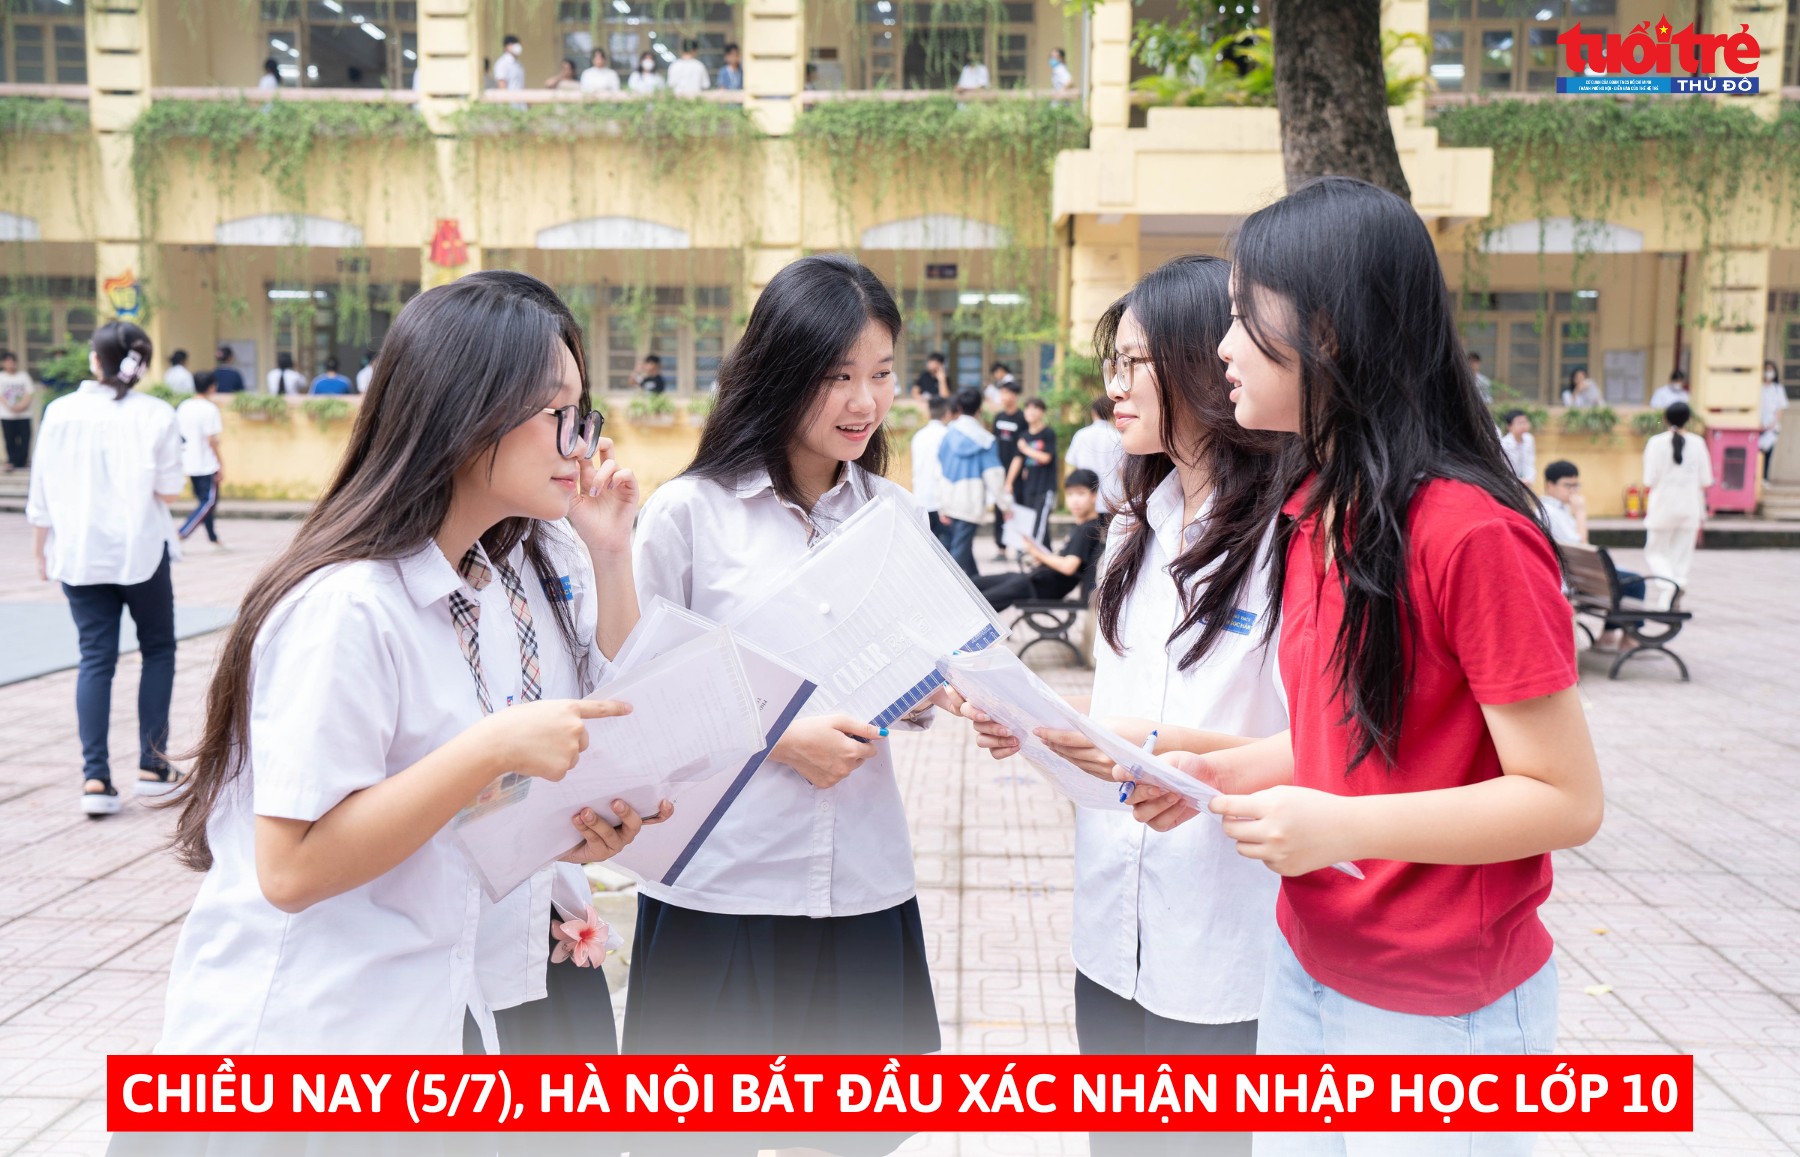 Chiều nay (5/7), Hà Nội bắt đầu xác nhận nhập học lớp 10